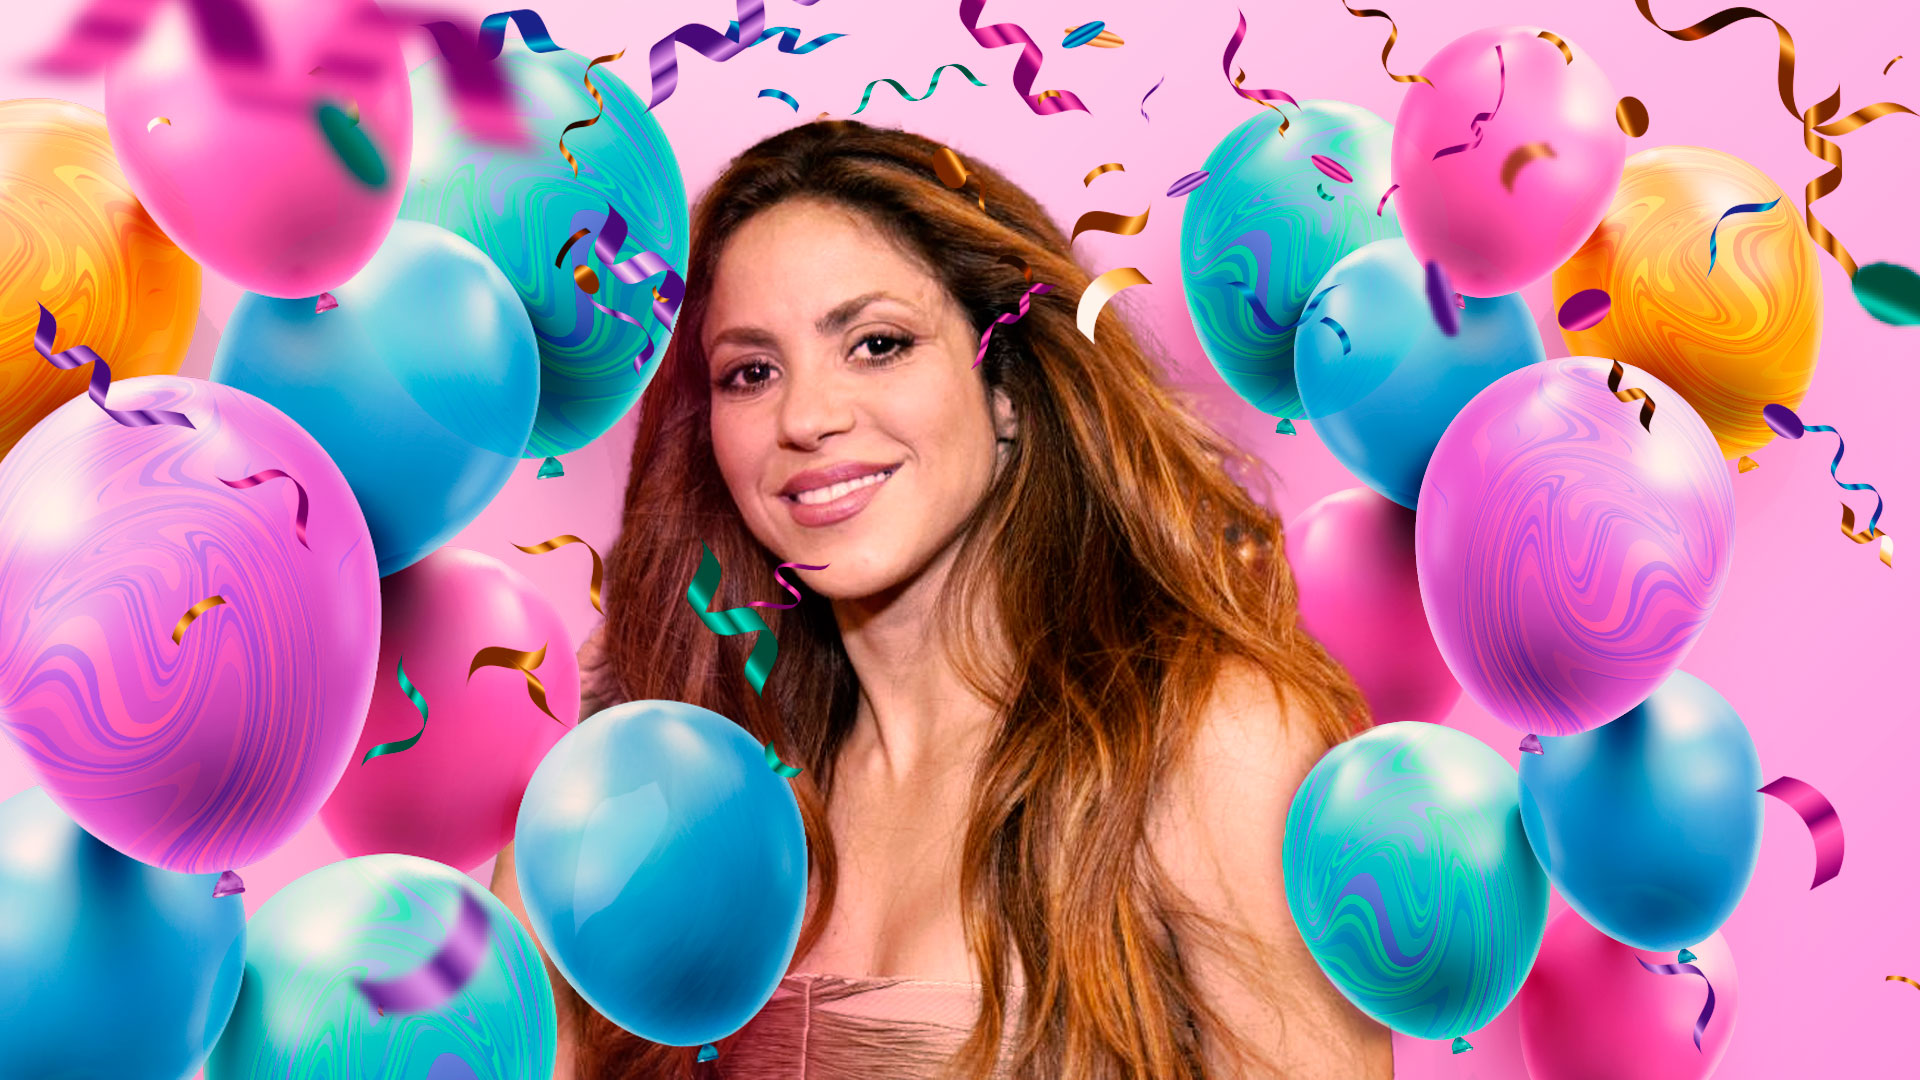 En las redes sociales miles de usuarios le desean feliz cumpleaños a Shakira. Original Infobae Colombia